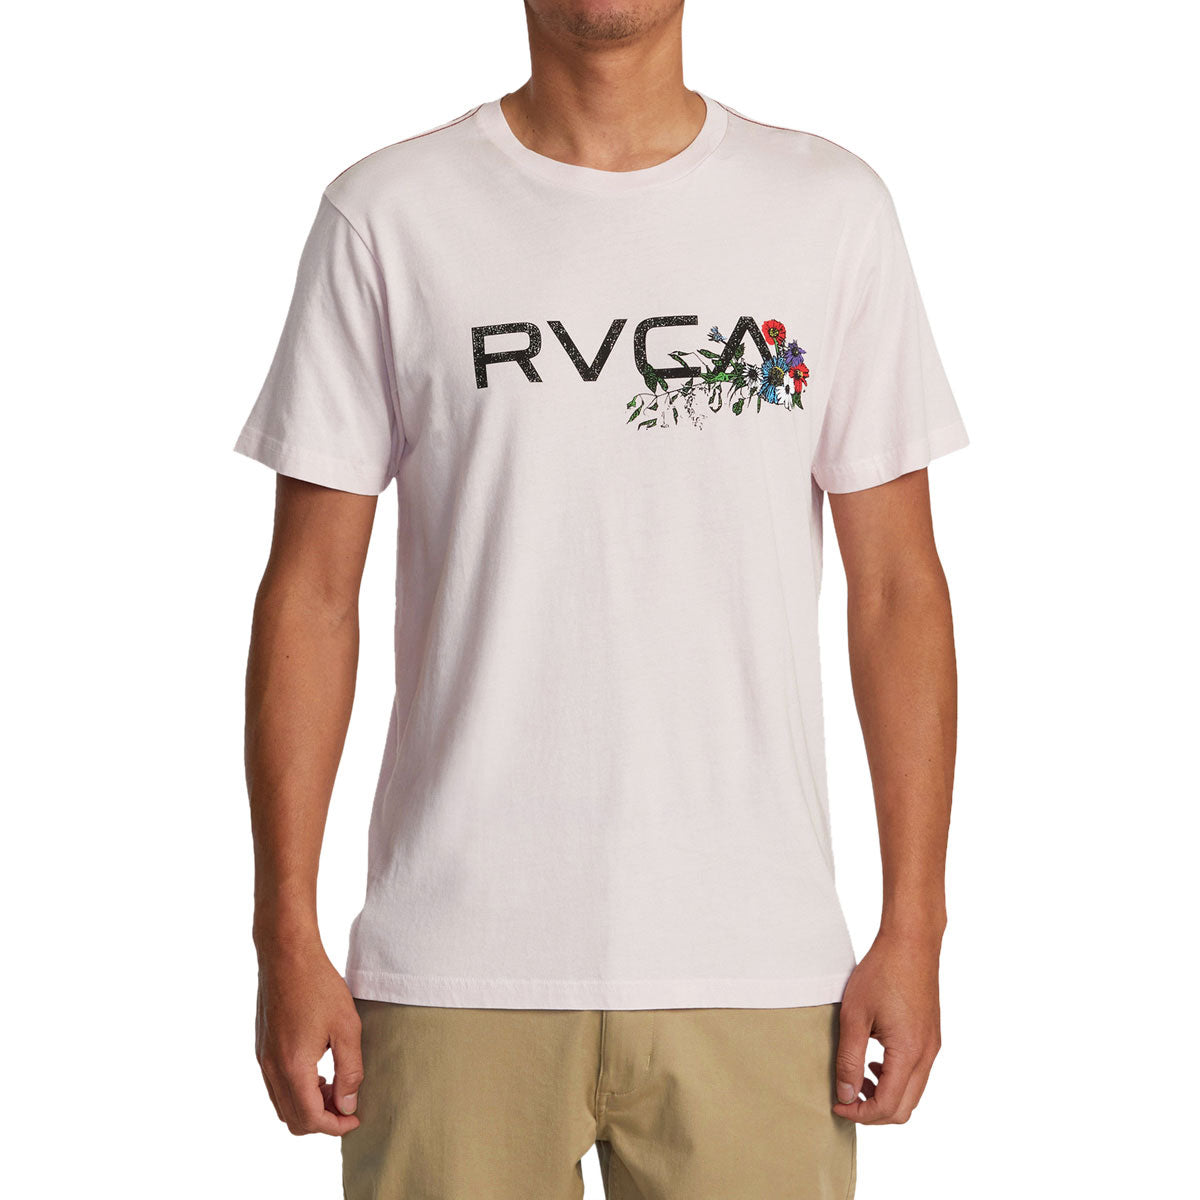 RVCA Arrangement T-Shirt - Light Pink image 2